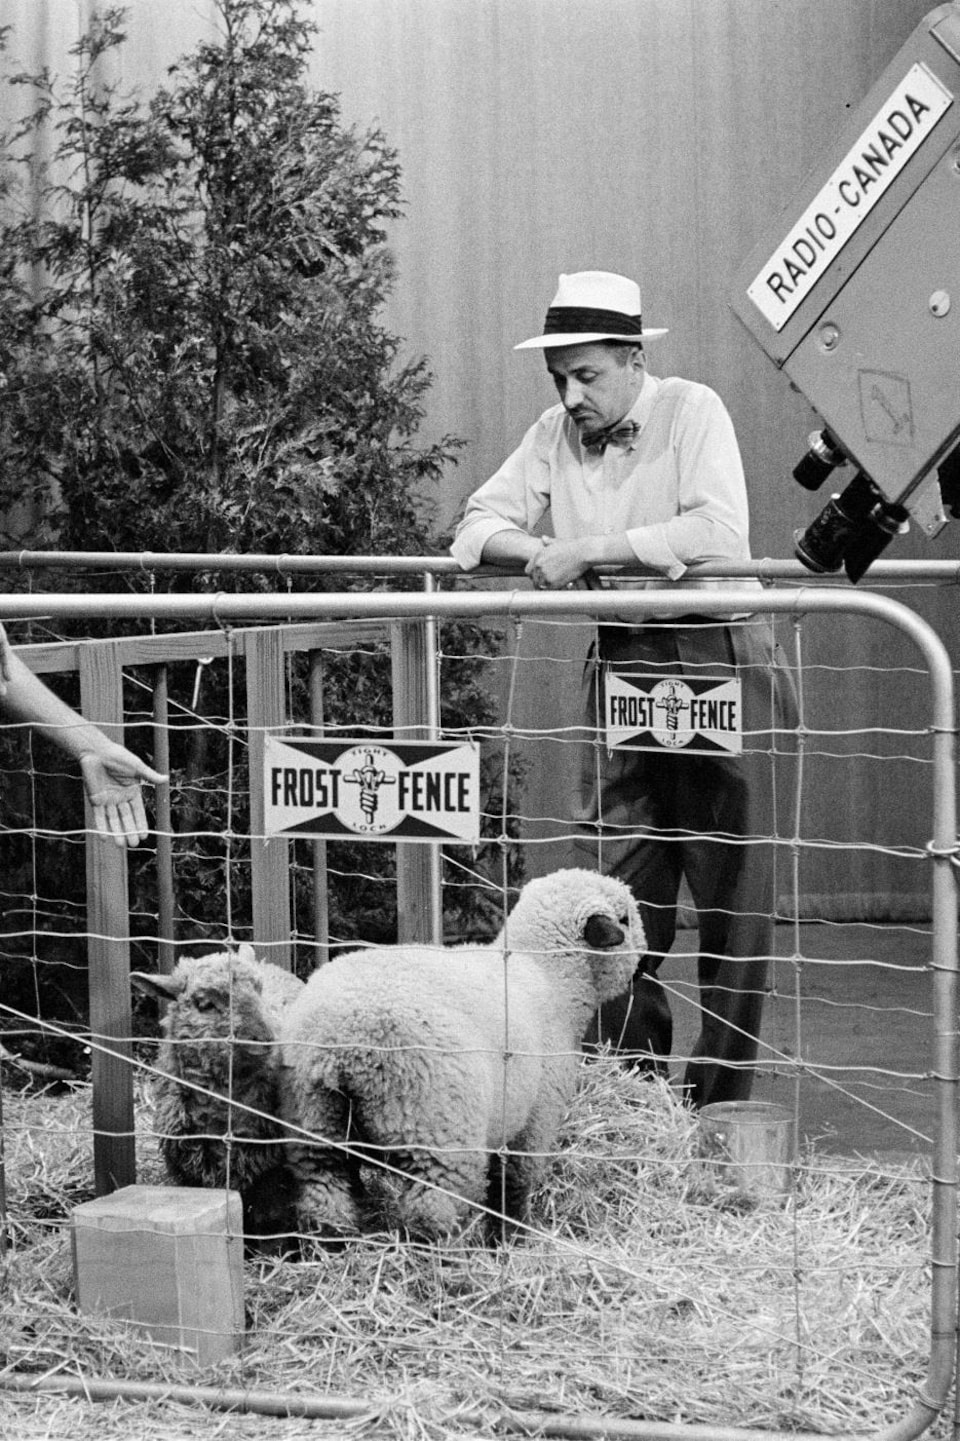 Dans un studio de télévision, l'agronome Georges Mayrand, debout à l'intérieur d'un enclos où broutent des moutons, discute avec l'animateur Germain Lefebvre. À l'avant-plan, une caméra de télévision capte la scène.